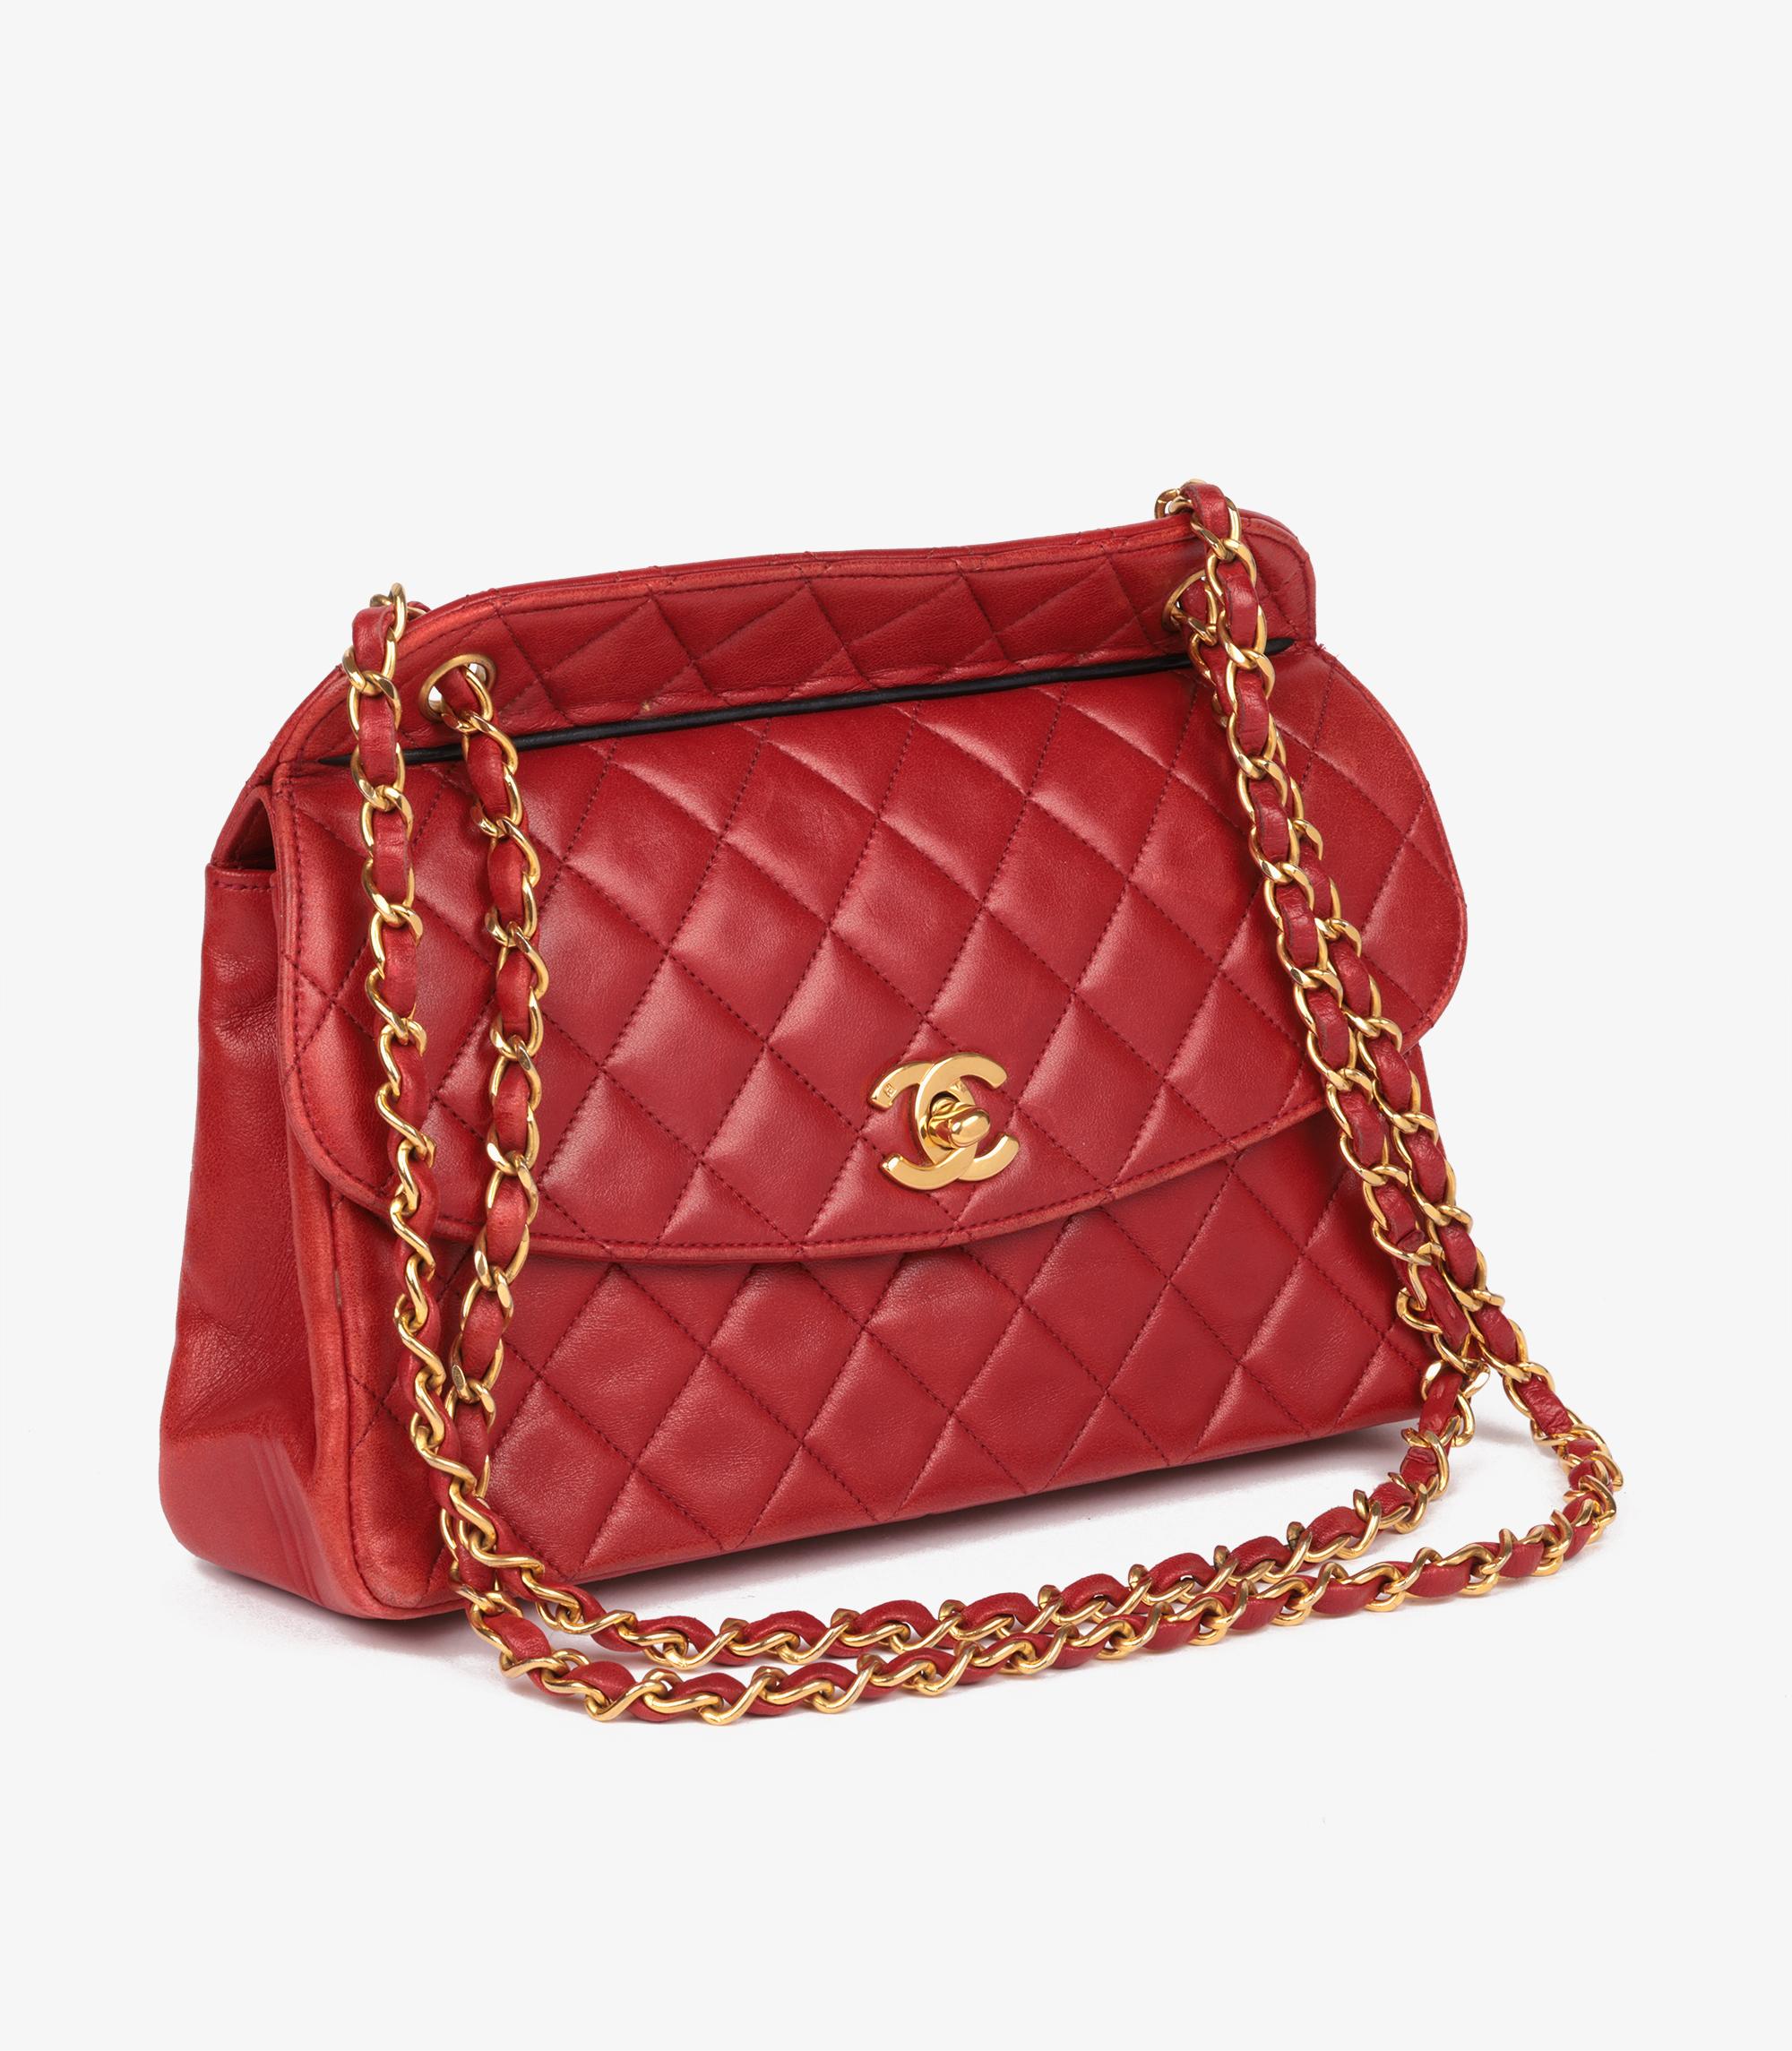 Chanel Rote gesteppte Vintage Medium Classic Single Flap Tasche mit Beutel aus Lammfell

Marke- Chanel
Modell- Medium Classic Single Flap Tasche
Produkttyp- Schulter
Seriennummer - 1505971
Alter- Circa 1989
Begleitet von - Chanel Staubbeutel,